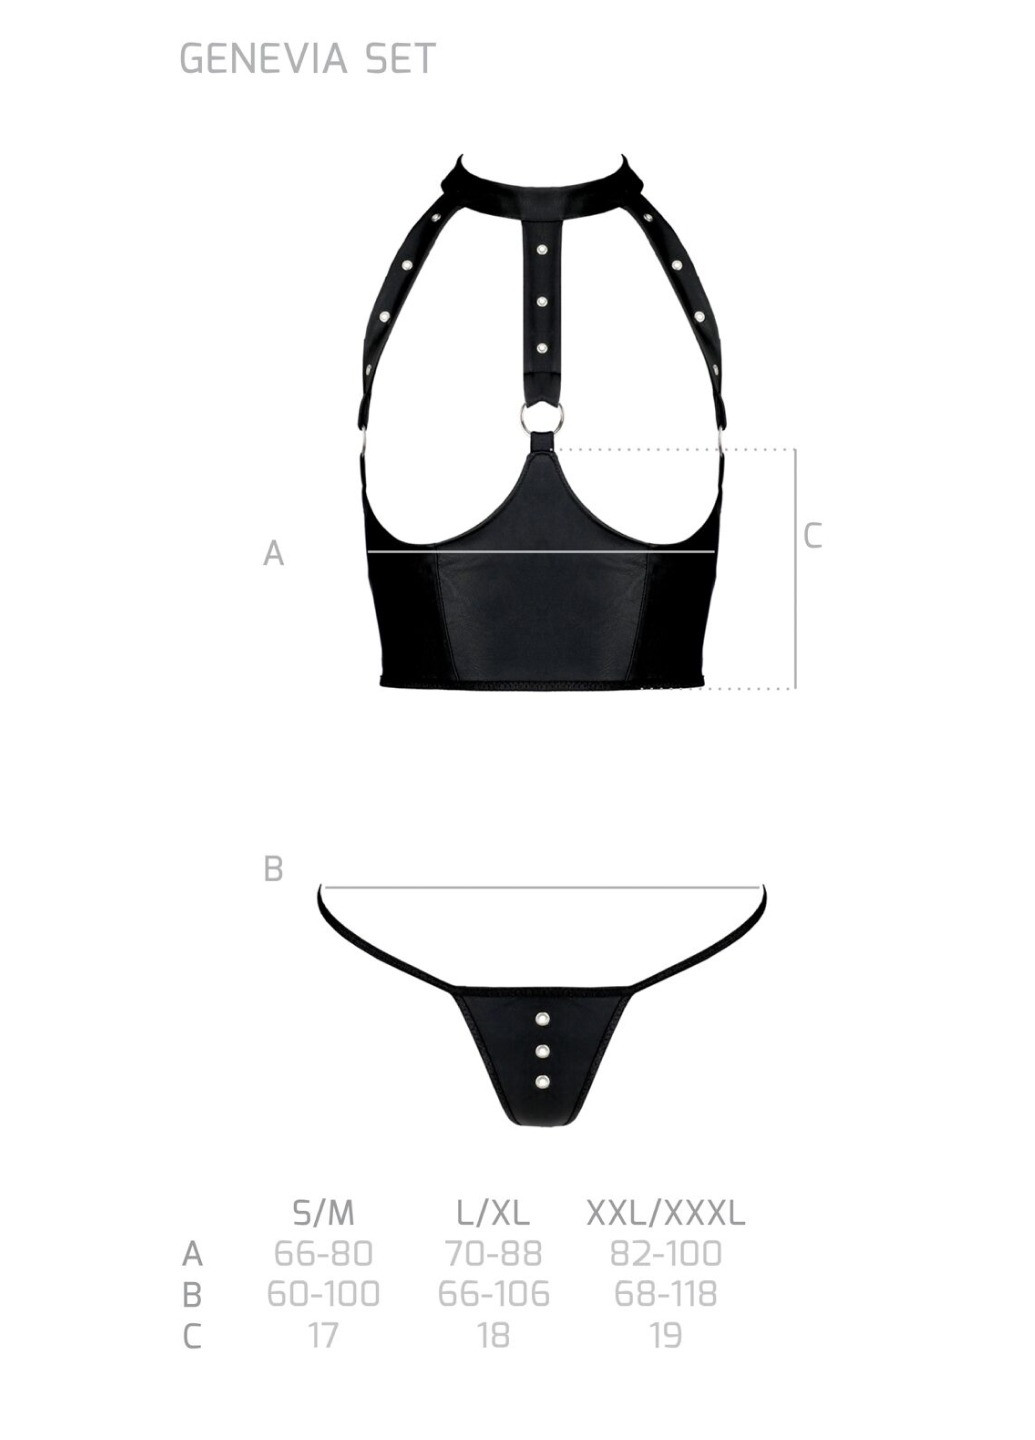 Прозрачный демисезонный комплект белья с открытой грудью genevia set with open bra xxl/xxxl black, корсет, стринги Passion